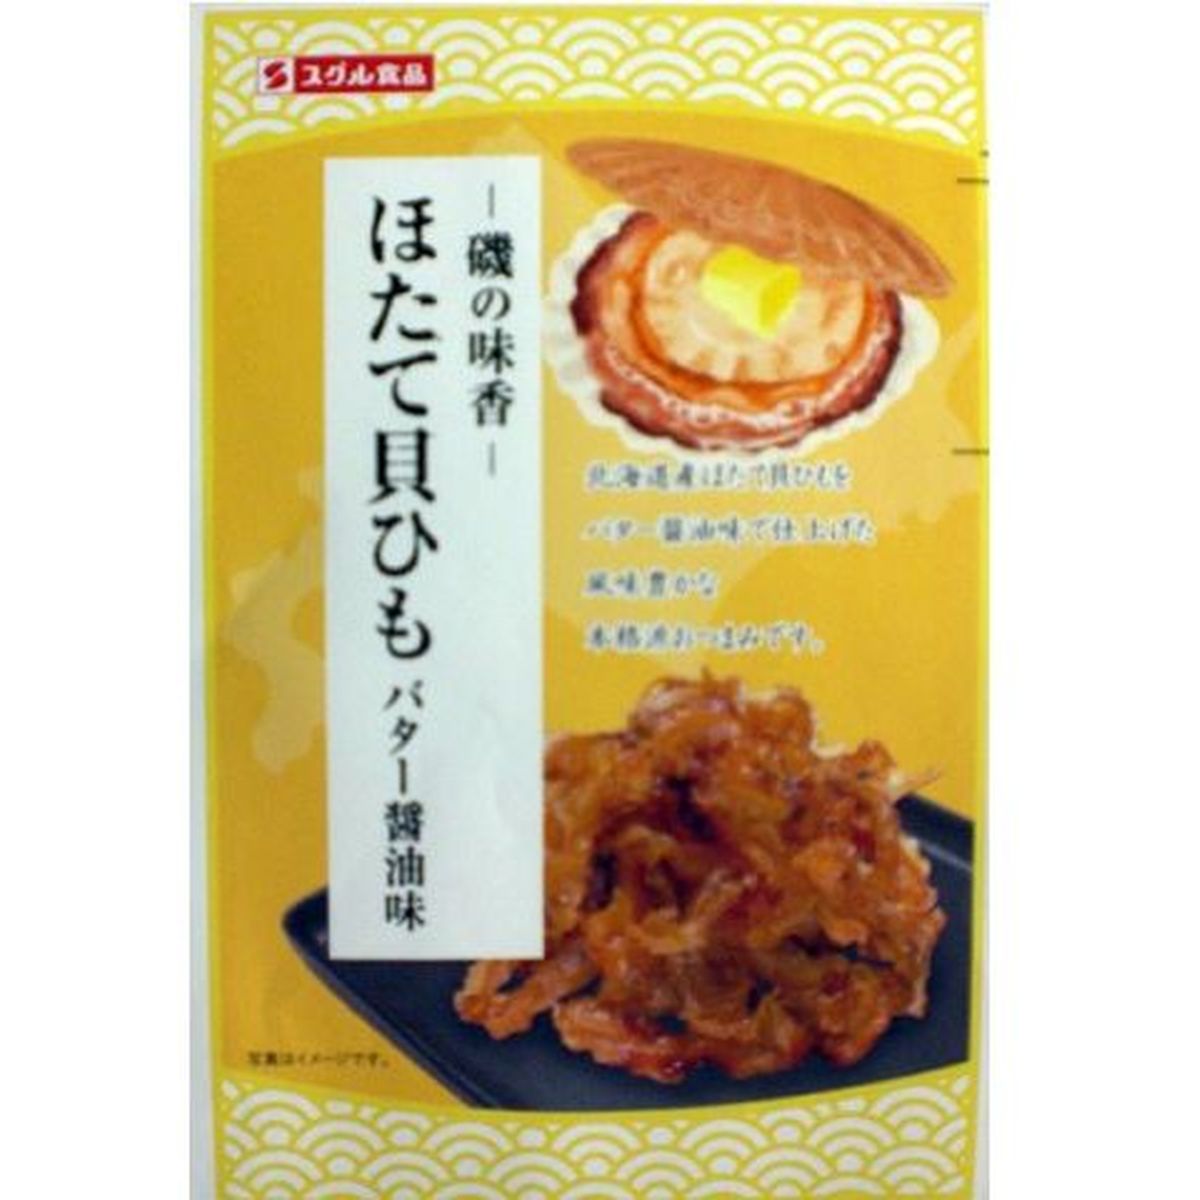 【10個入リ】スグル ホタテ貝ヒモバター醤油味(スグル 14g